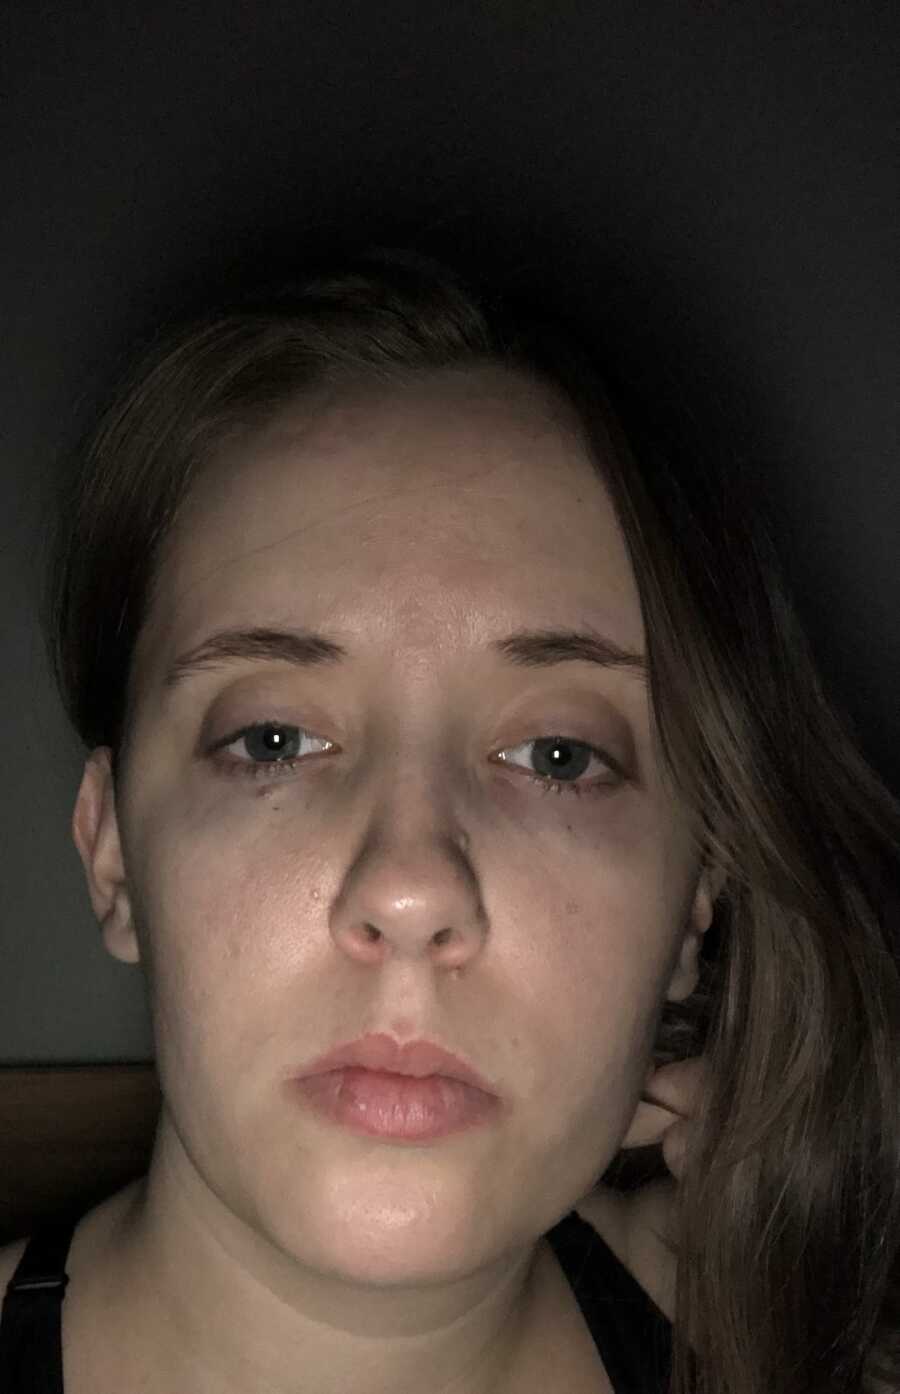 woman with lyme disease takes selfie in the dark looking tired